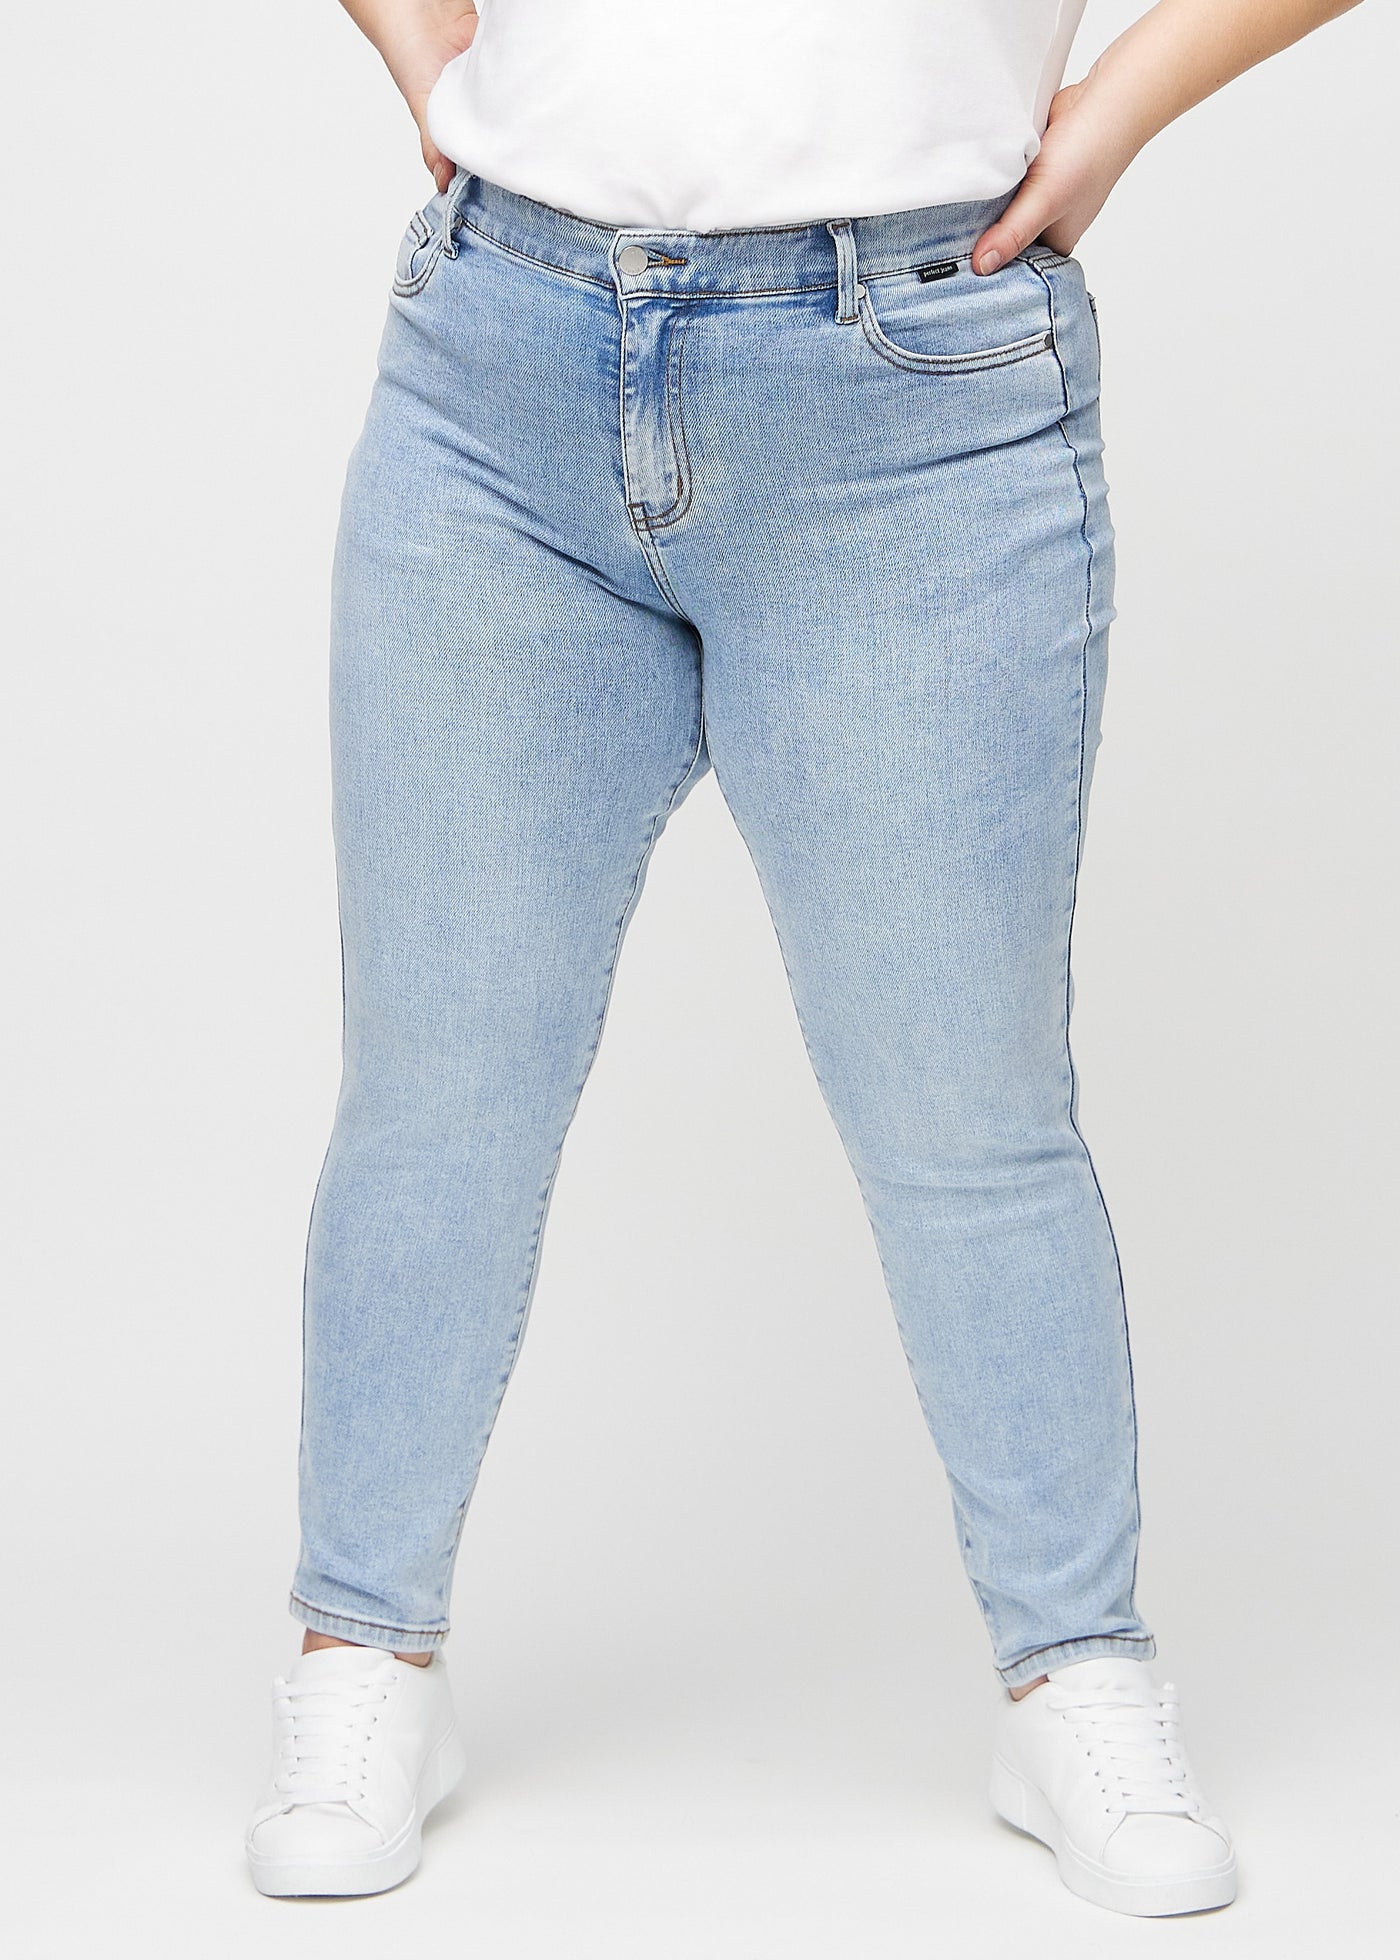 Lys denim slim jeans, modelnavn Waves, som sidder tæt til benet, dog lidt løsere ved anklen, på en plus-size model, set forfra.